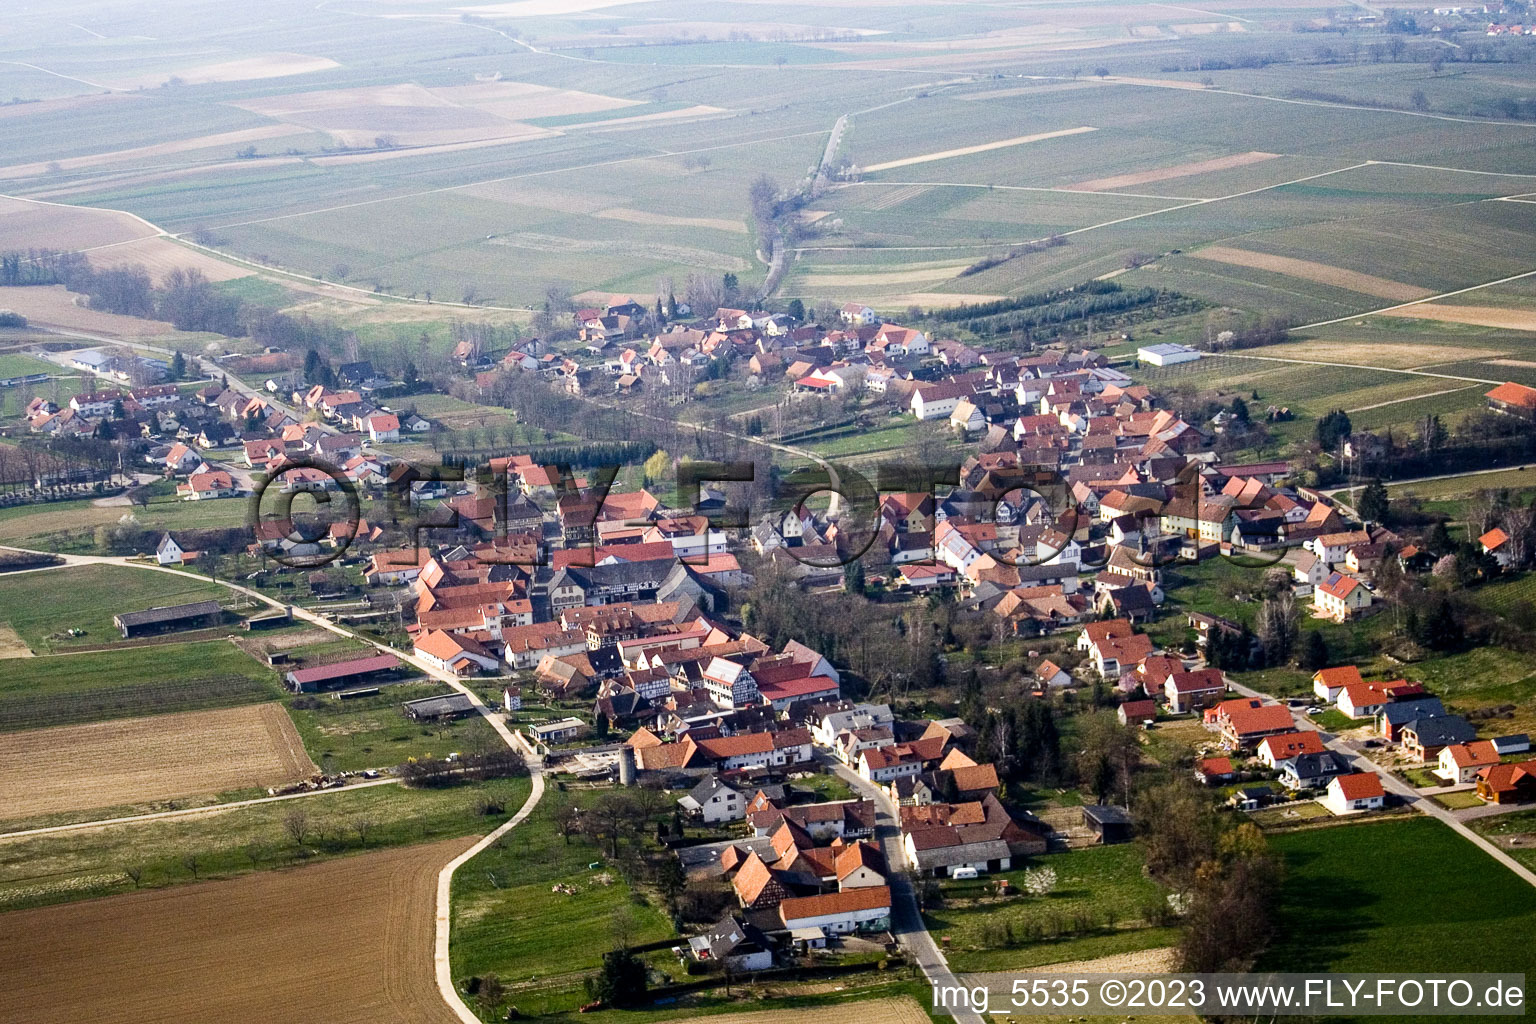 Dierbach dans le département Rhénanie-Palatinat, Allemagne vue d'en haut